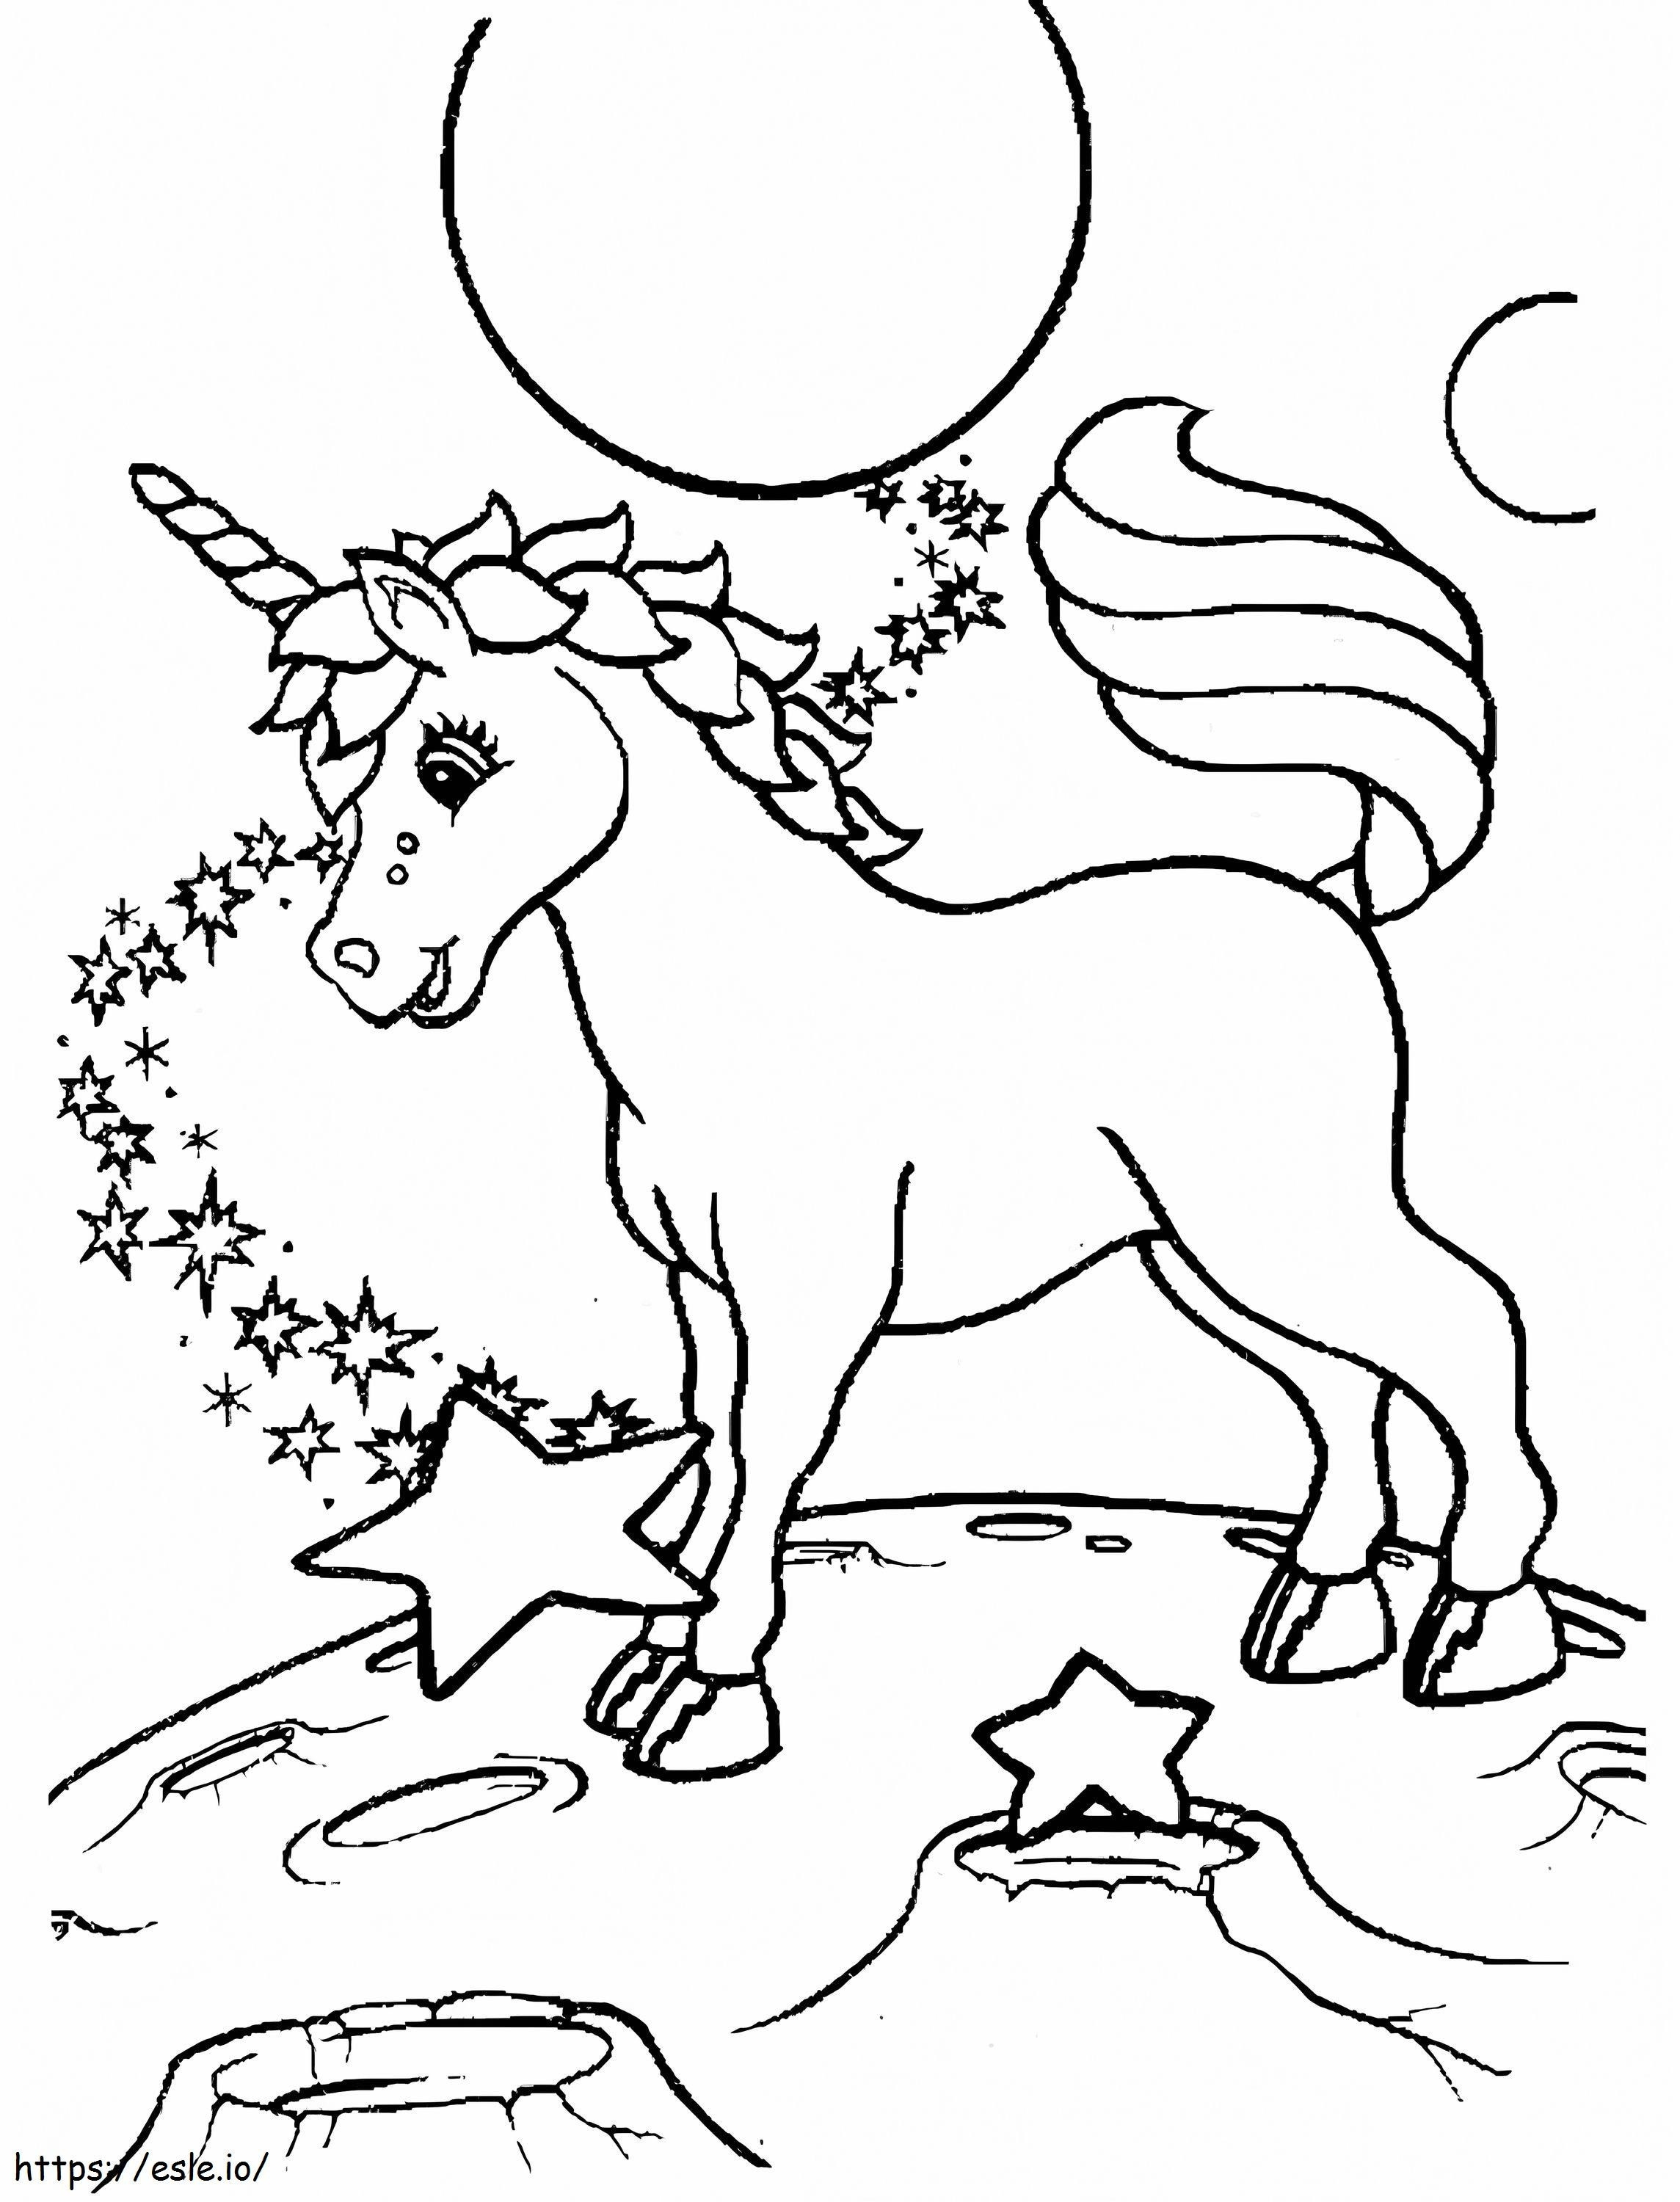  Unicorno In Lisa Frank A4 da colorare